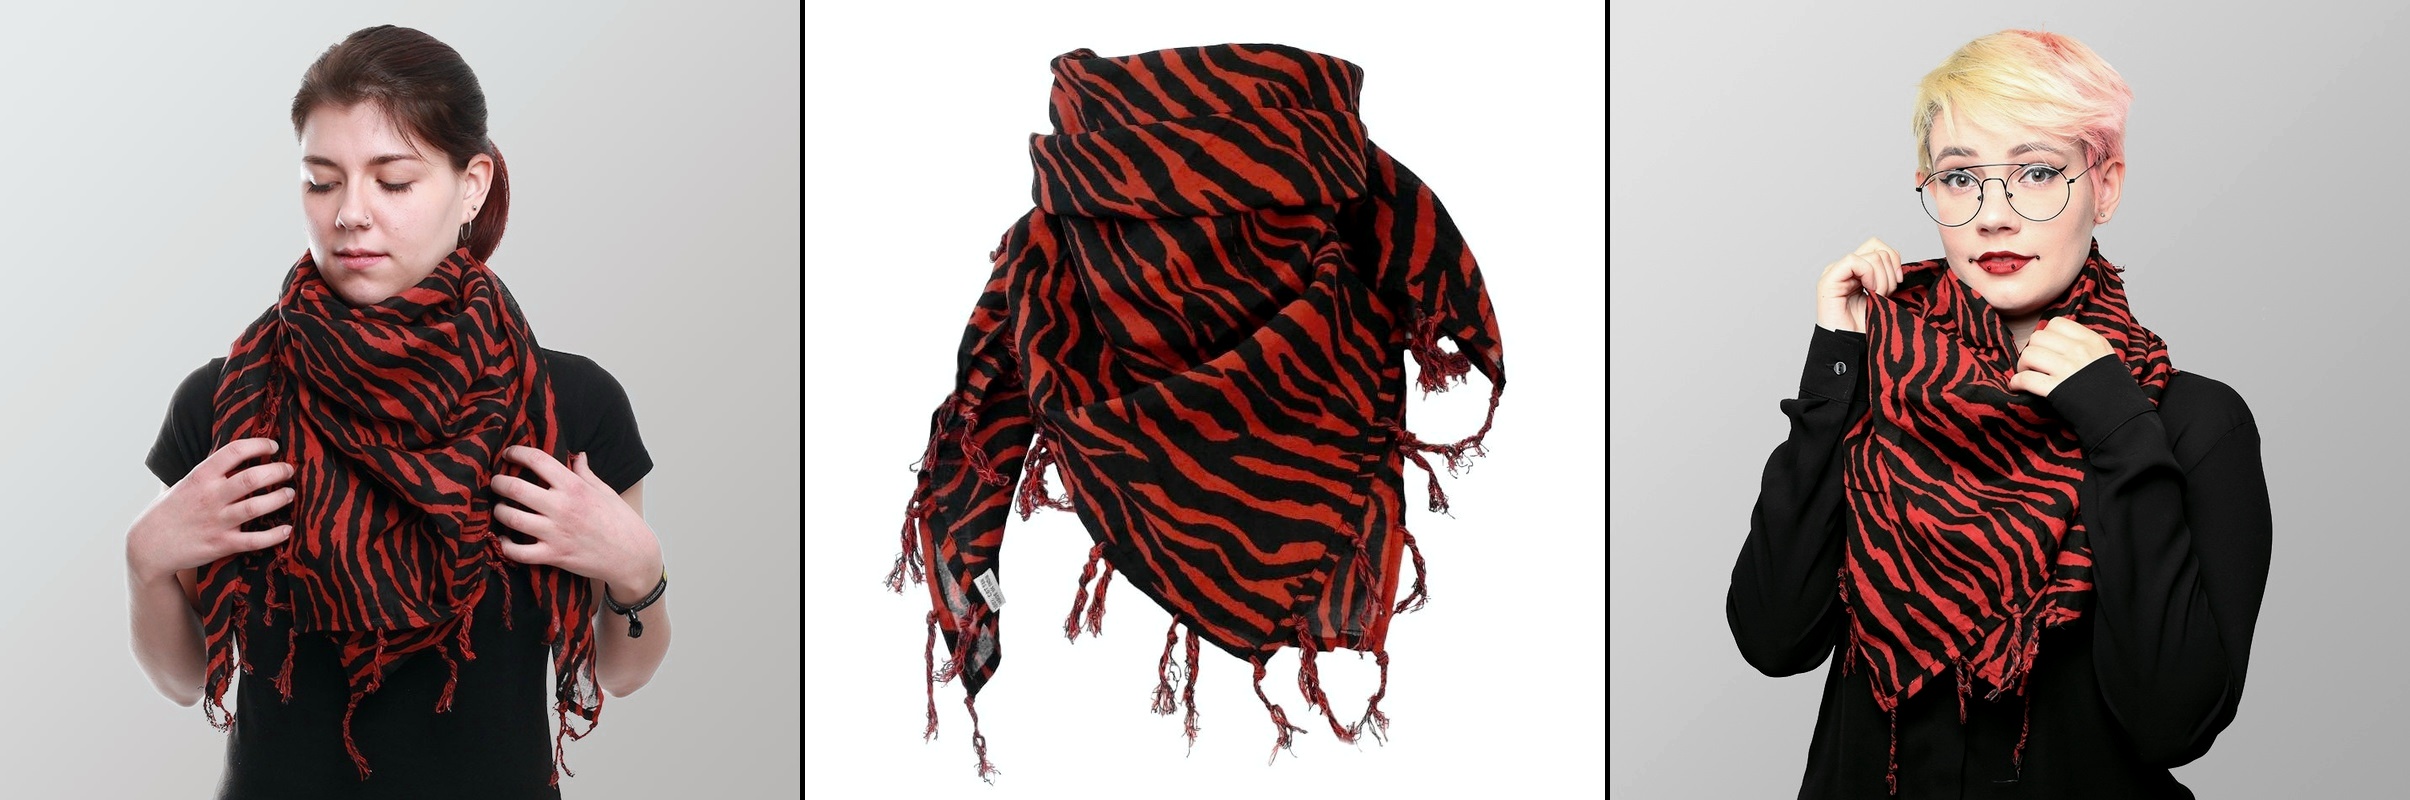 Šátek velký červená zebra s třásněmi